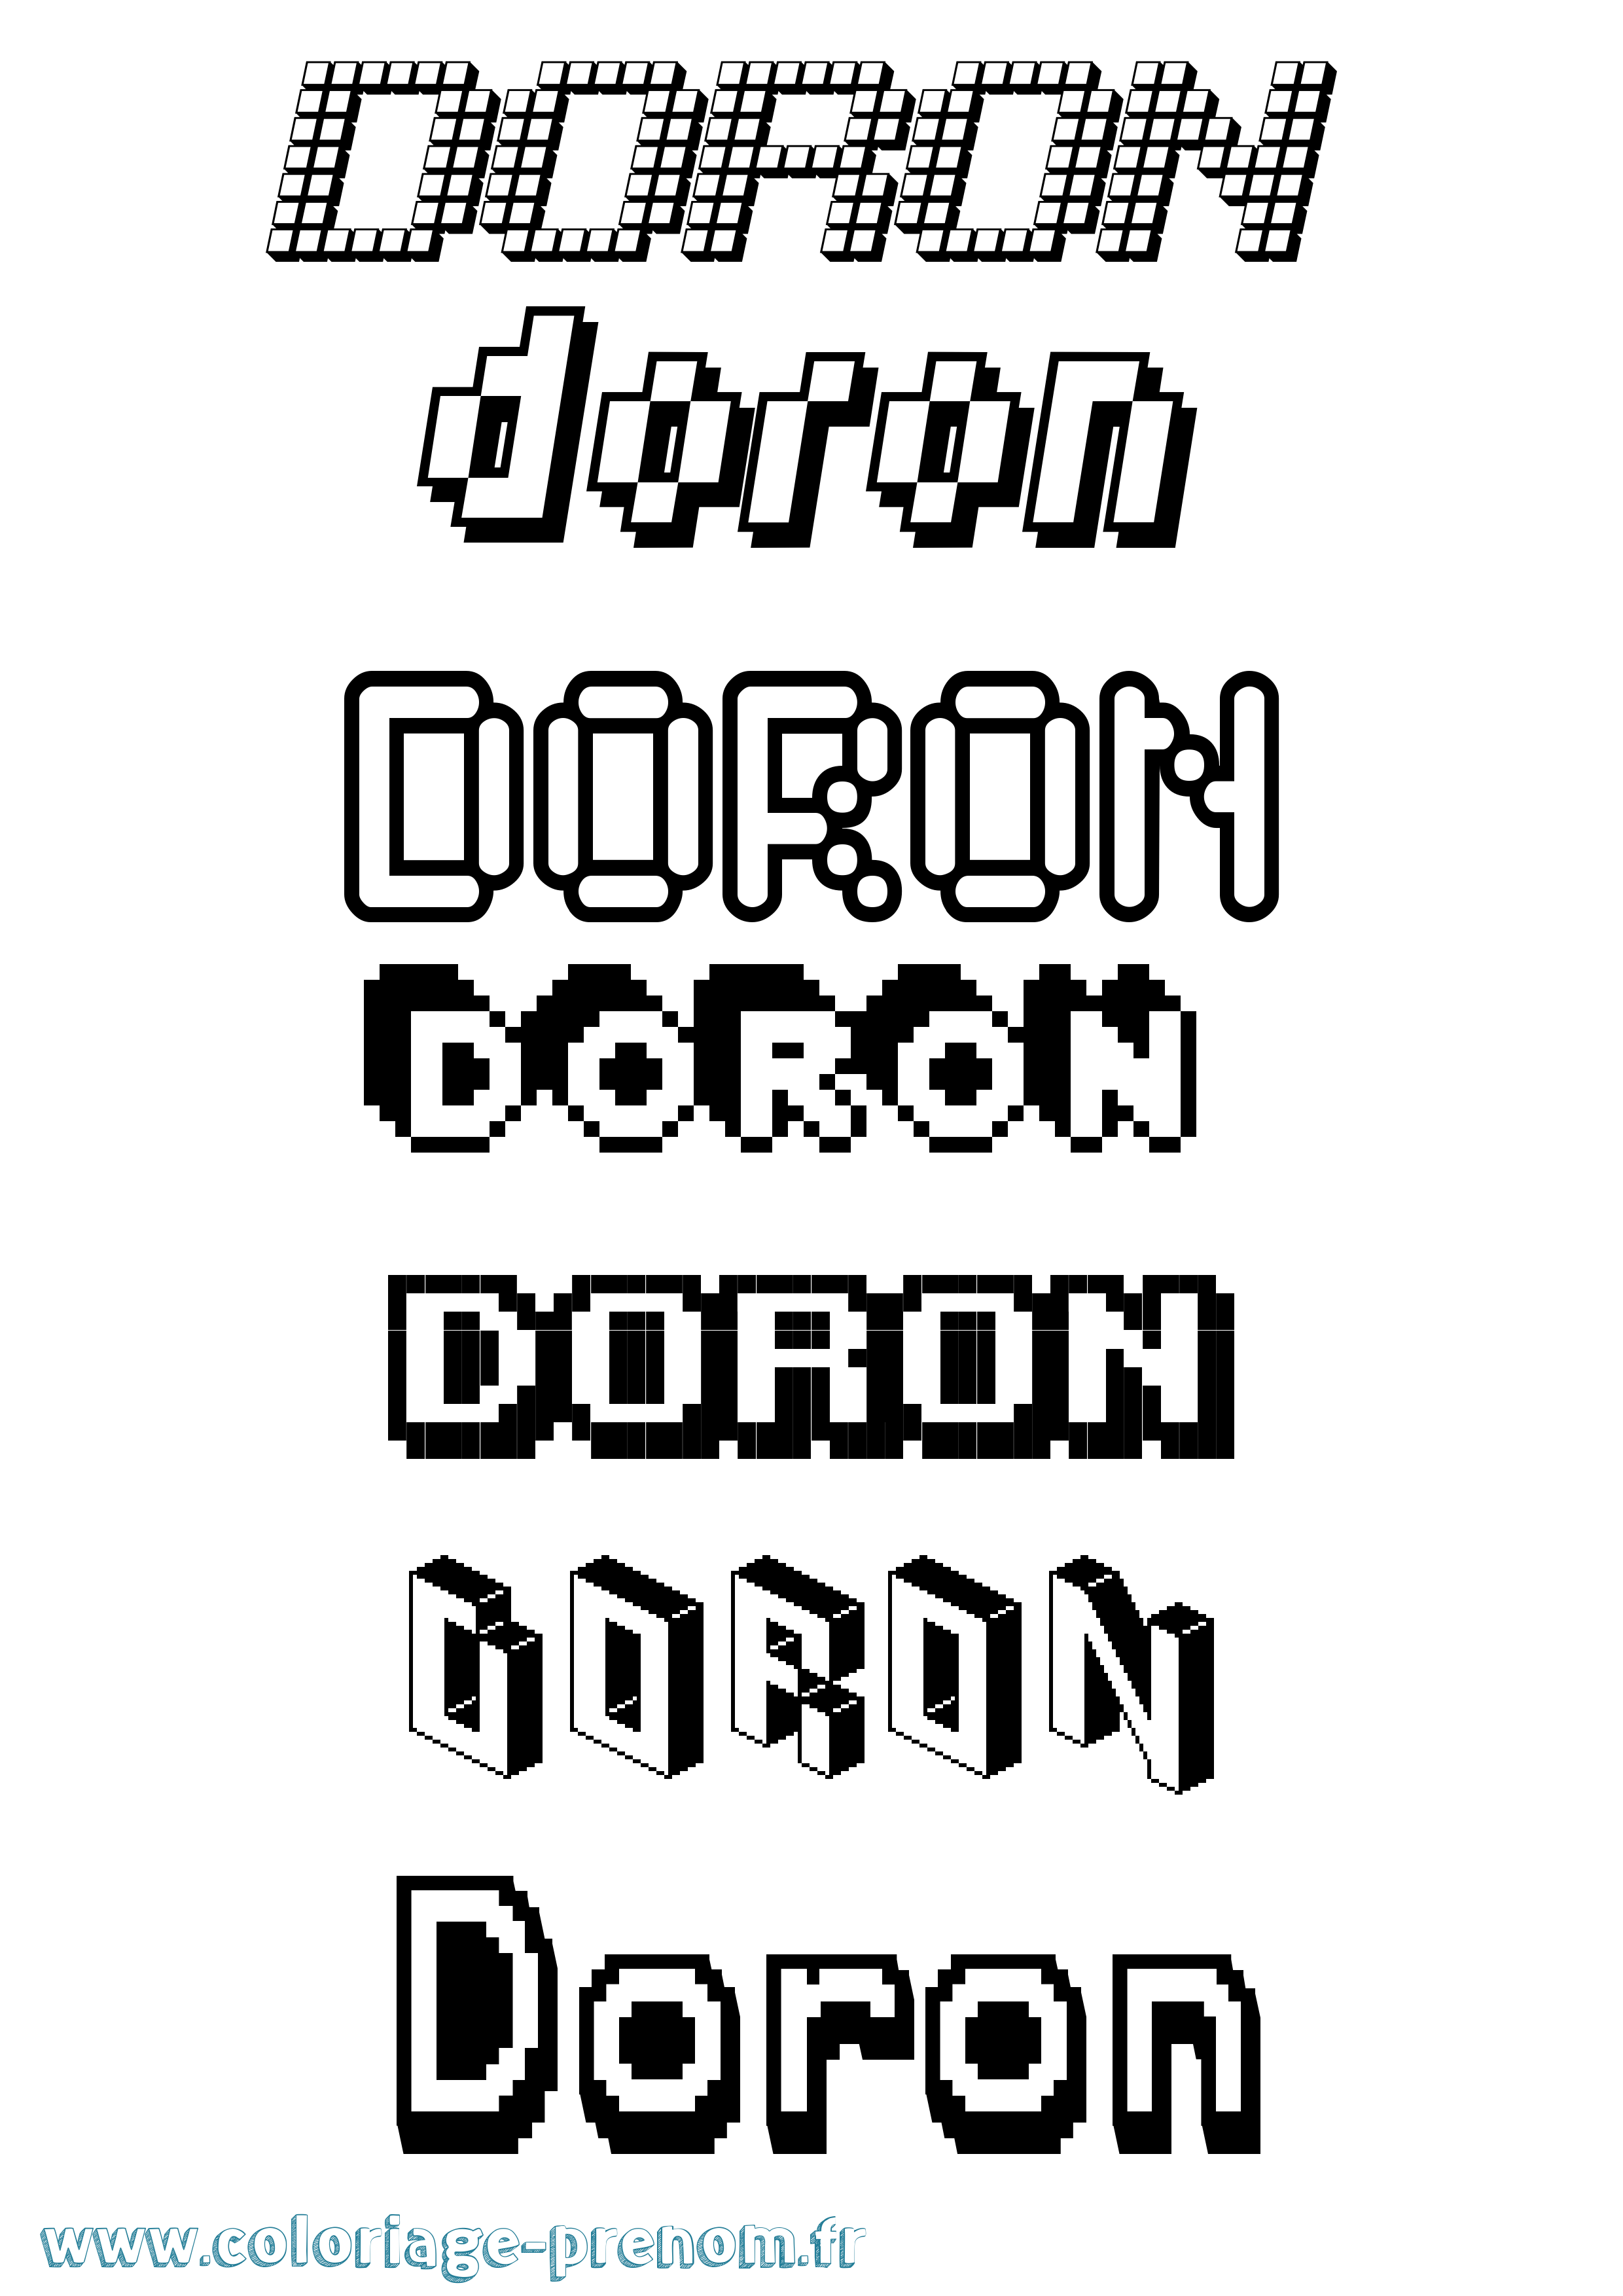 Coloriage prénom Doron Pixel